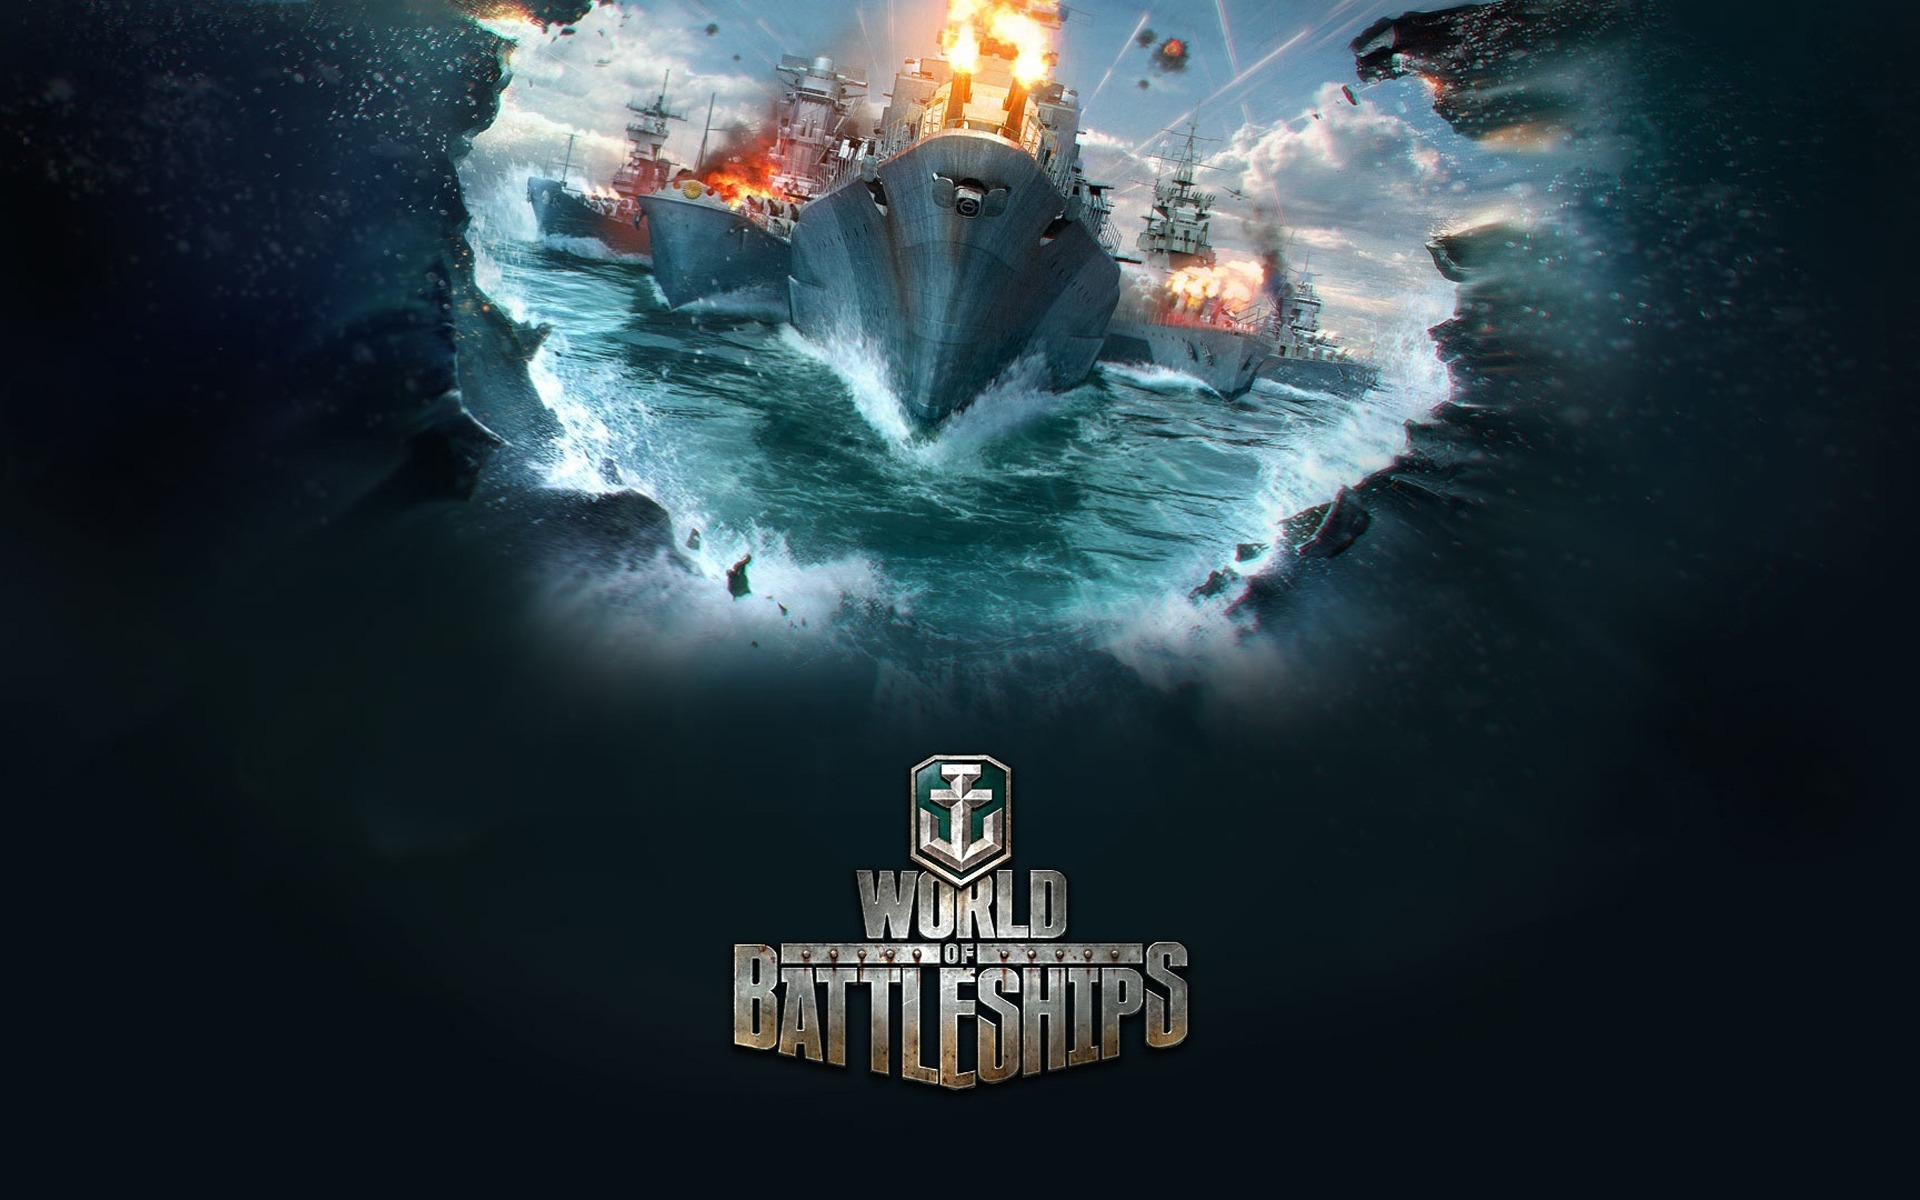 World of Battleships for 1920 x 1200 widescreen resolution